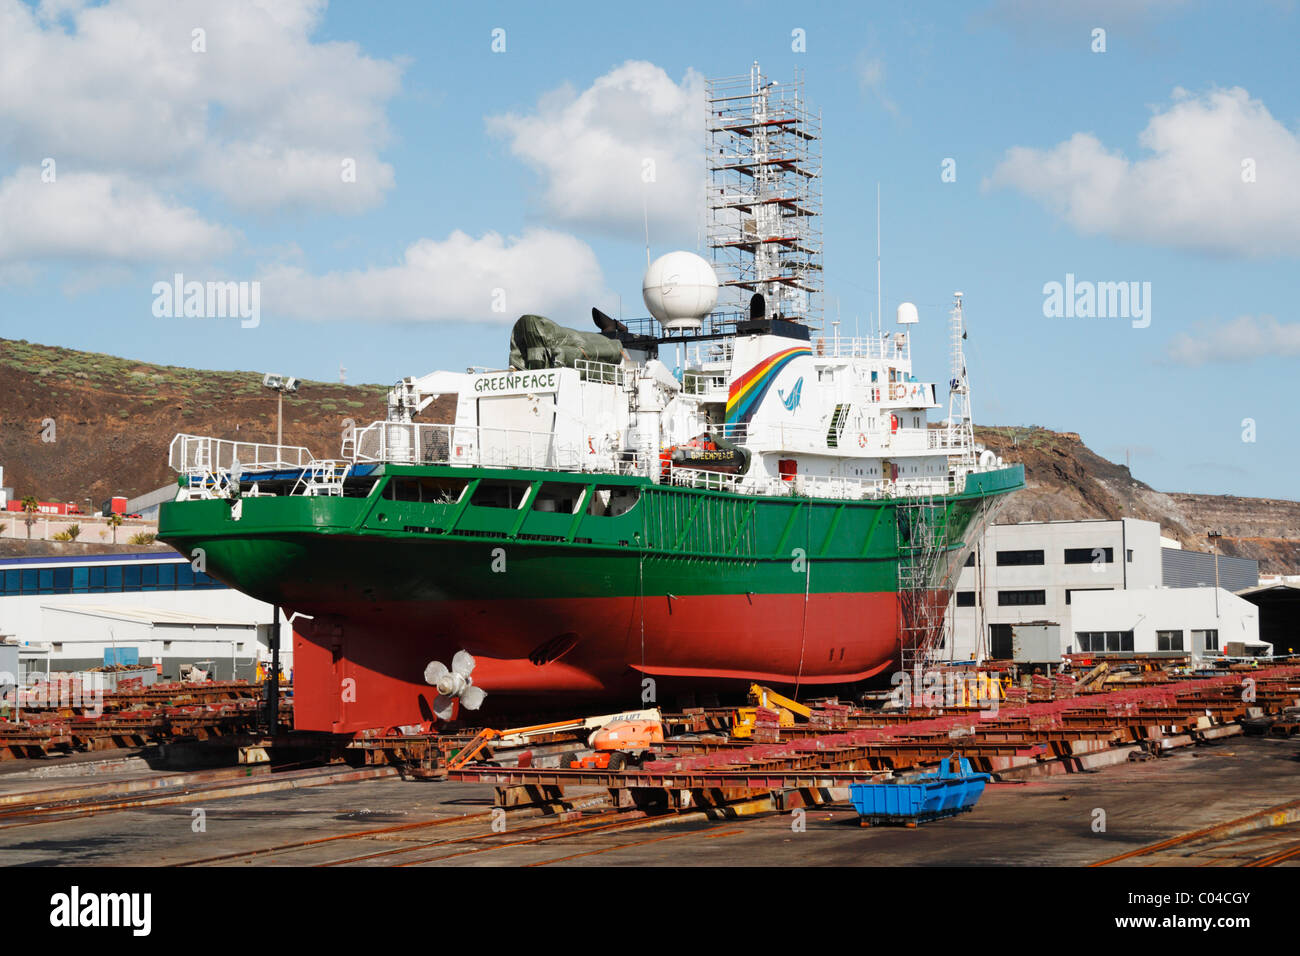 Greenpeace boat, The Esperanza, in drydock in Puerto de La Luz, Las Palmas, Gran Canaria, Canary Islands, Spain Stock Photo